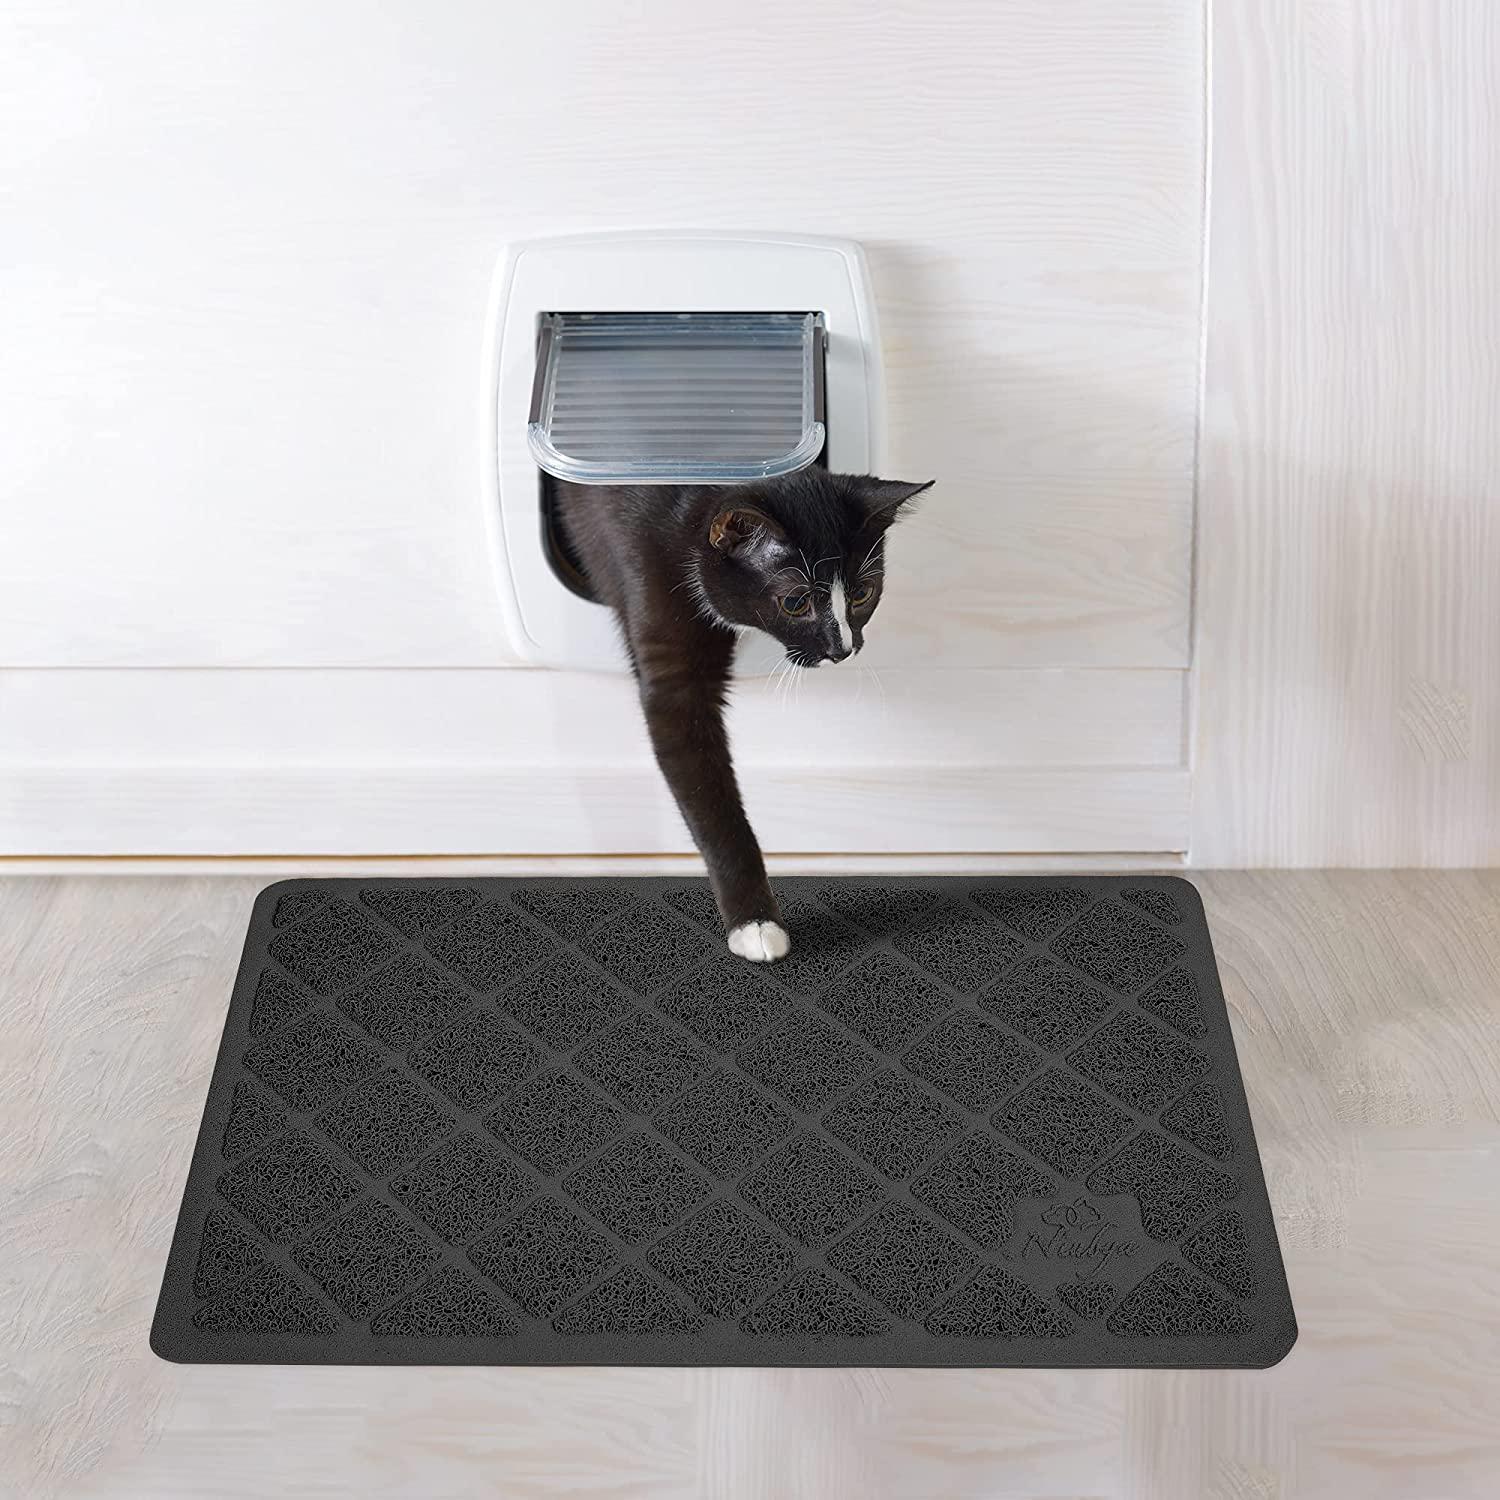 Cat Litter Waterproof Mat